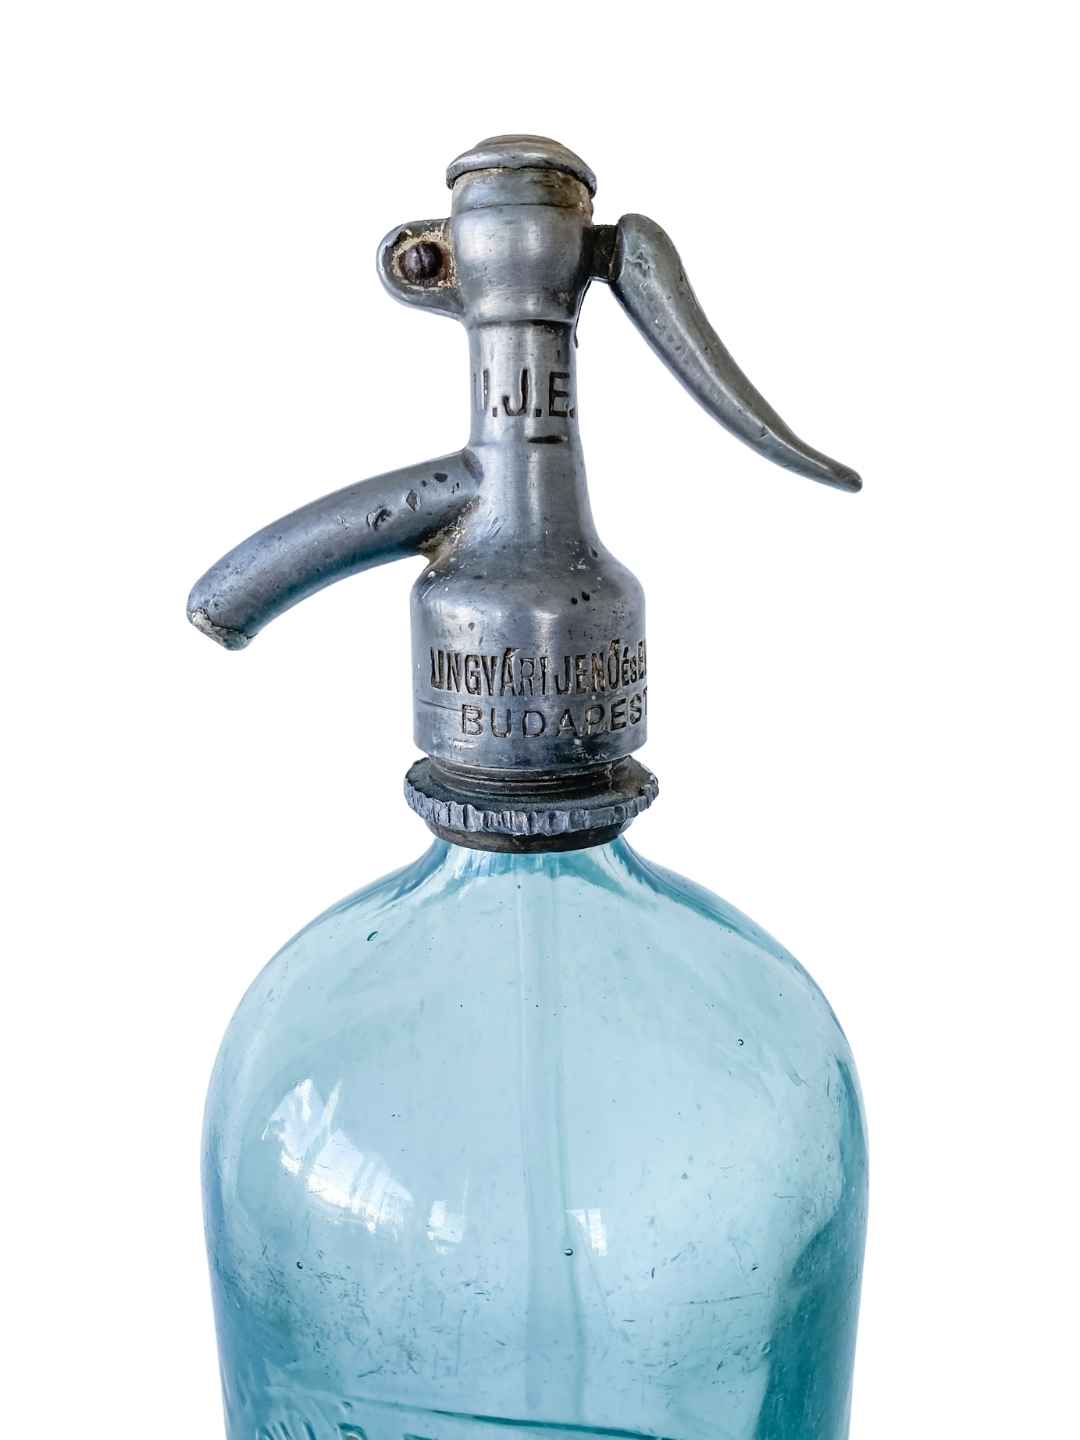 Vintage Siphon Flasche "U.J.E. Budapest" aus Glas 1934